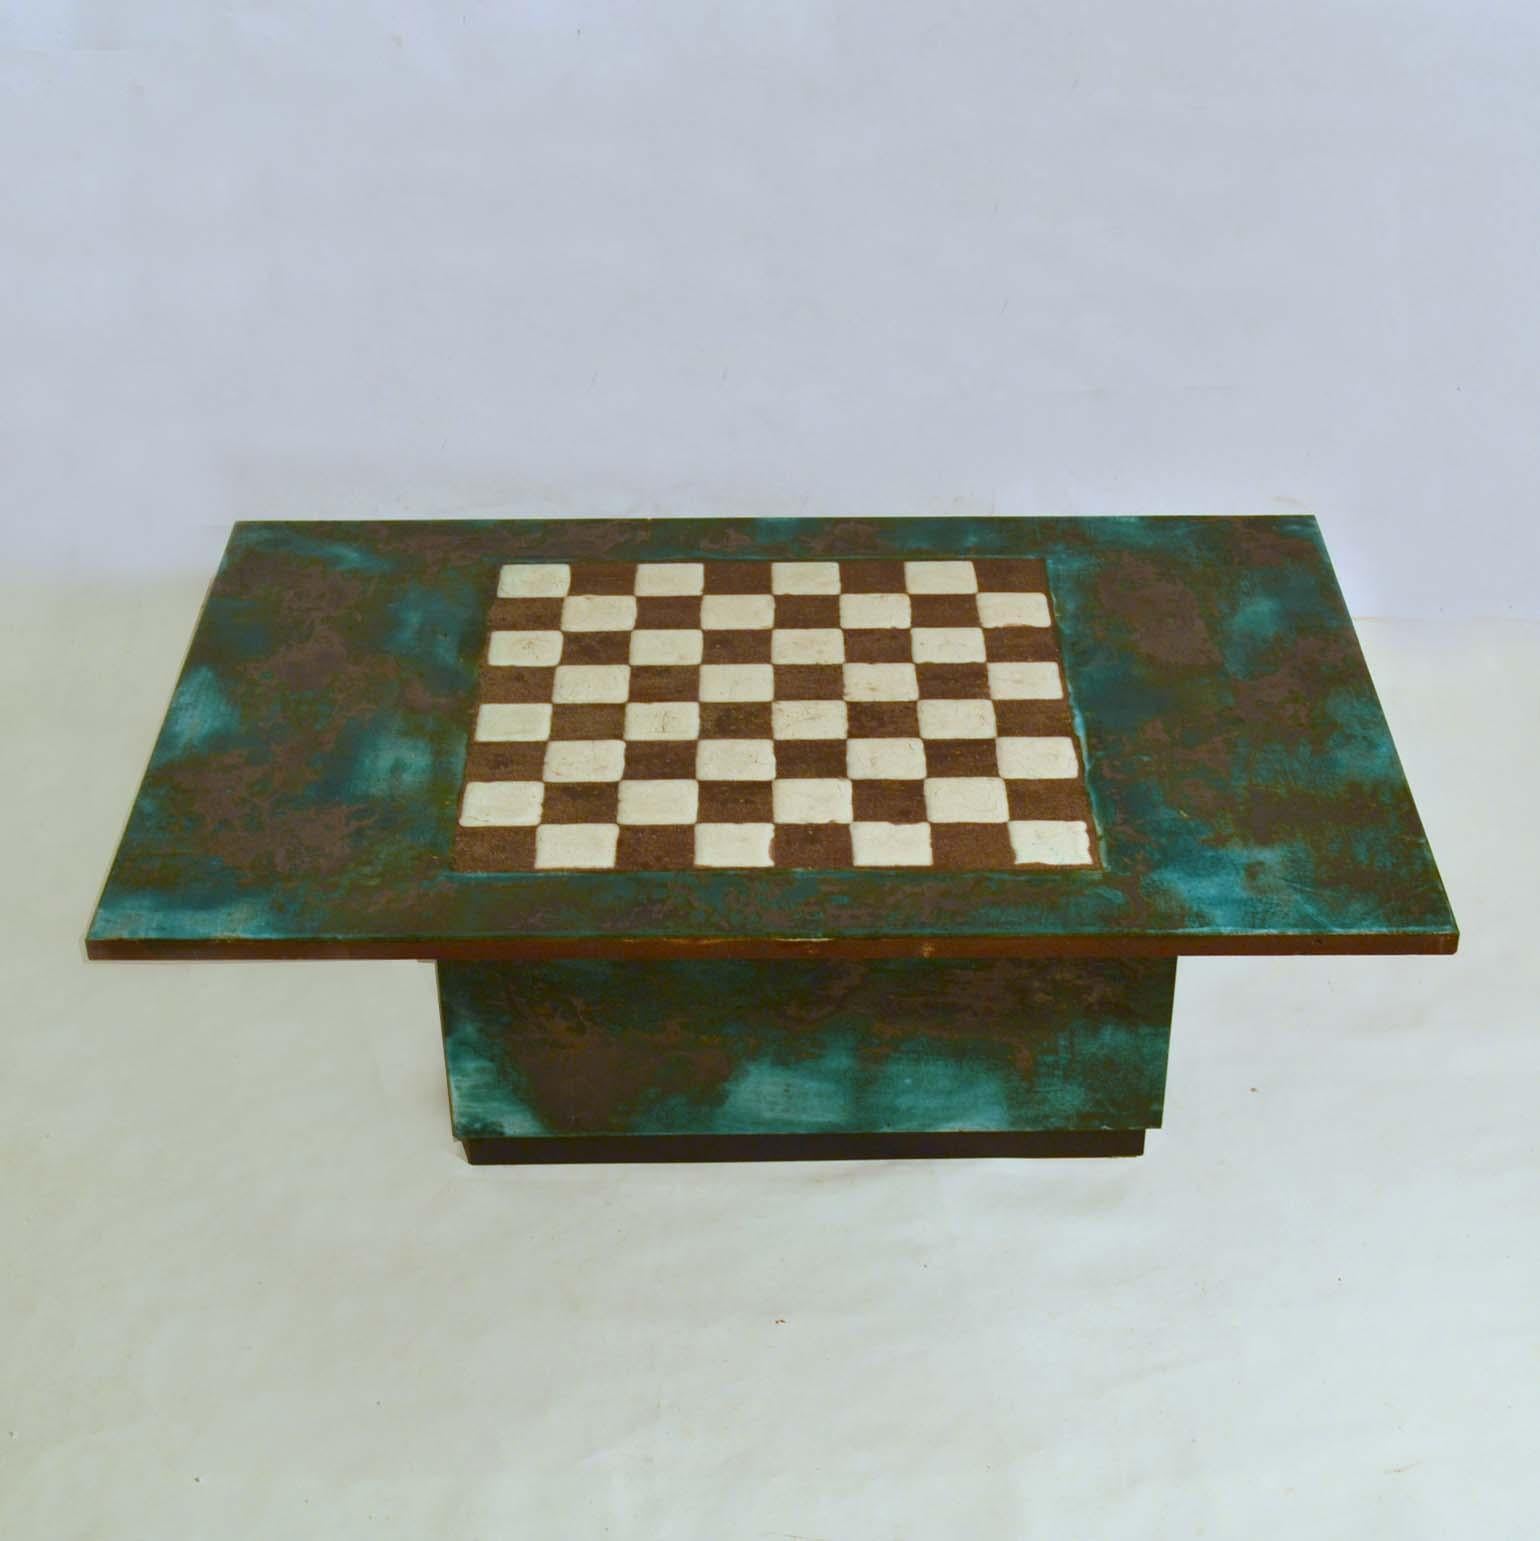 Einzigartiger handgeformter Schach- und Couchtisch aus den 1960er Jahren, skulptural und doch funktional, aus großen Keramikplatten gefertigt. Der Tisch strahlt einen materiellen Reichtum und eine grafische Schlichtheit aus. Die schwarzen Abschnitte